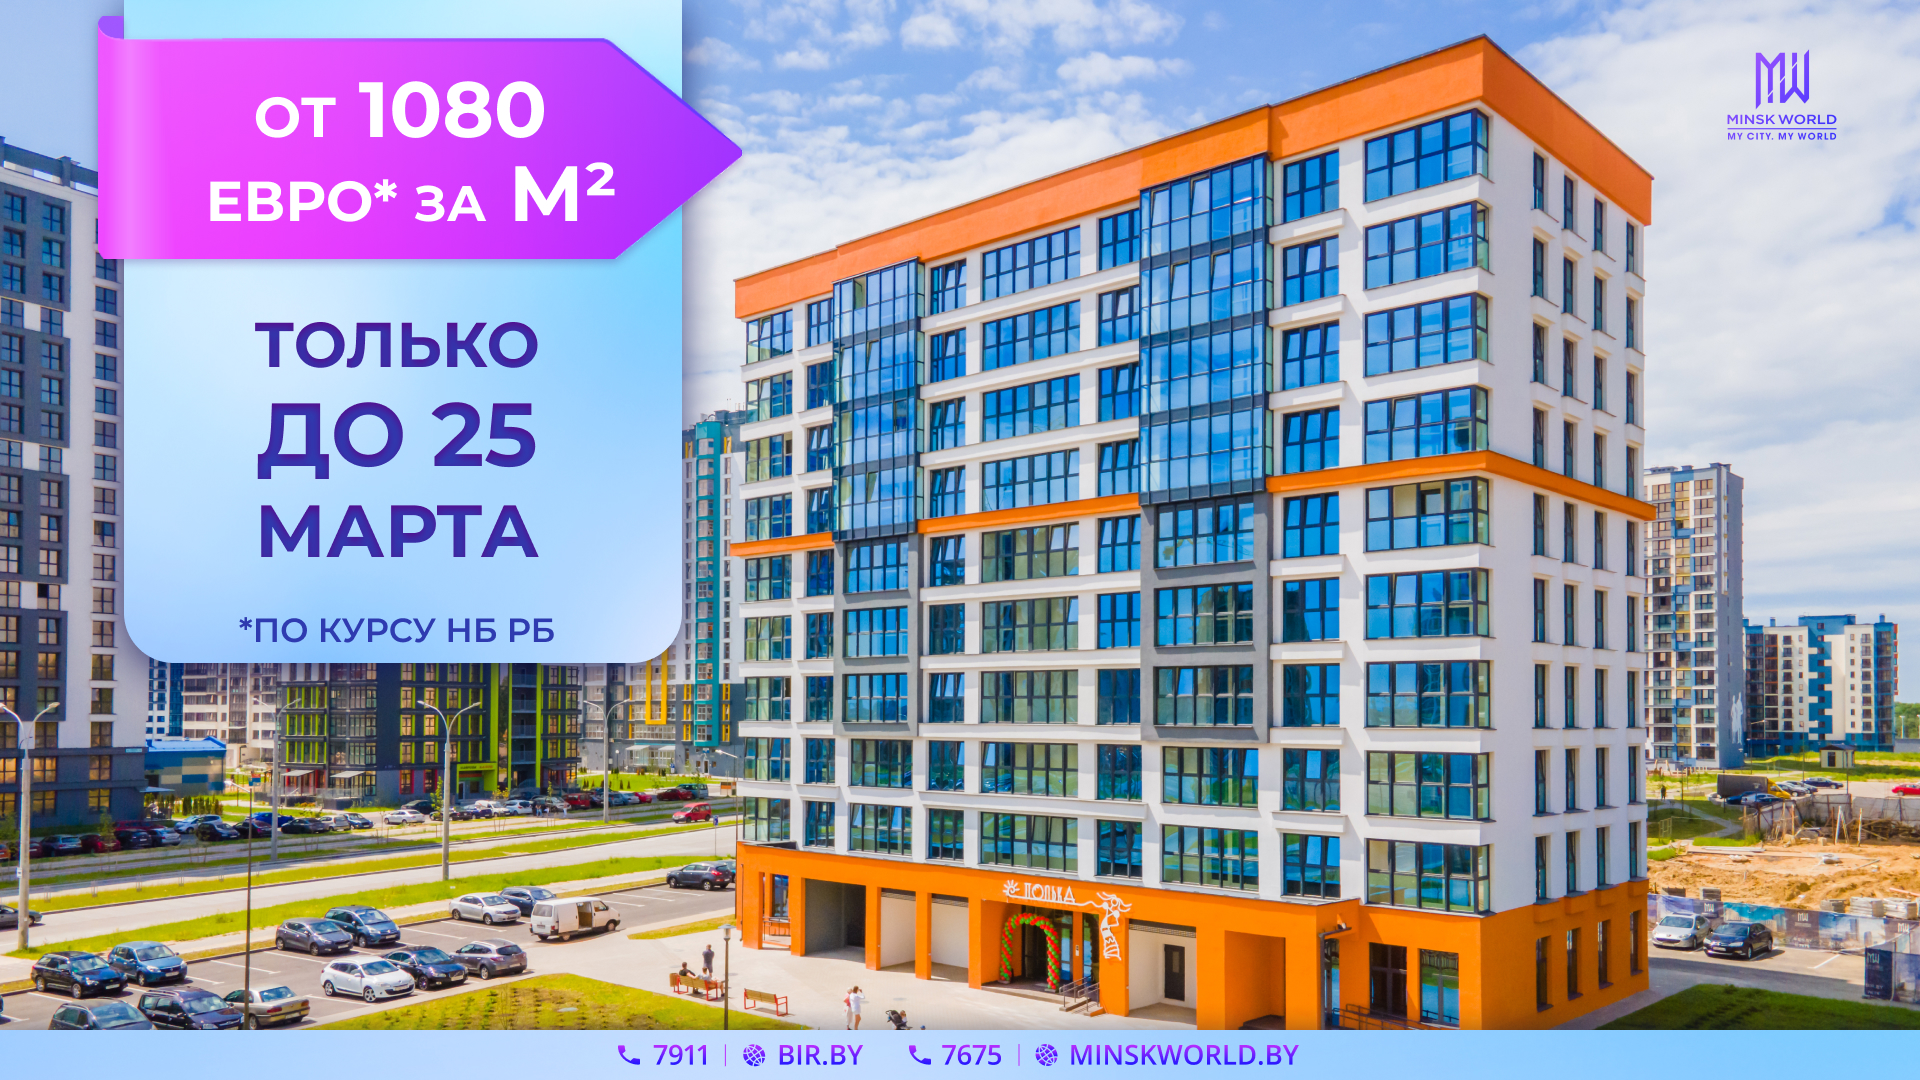 ОТ 1080 за м² элитной недвижимости, скидка 5% за быструю оплату и другие СУПЕРУСЛОВИЯ в Minsk World!